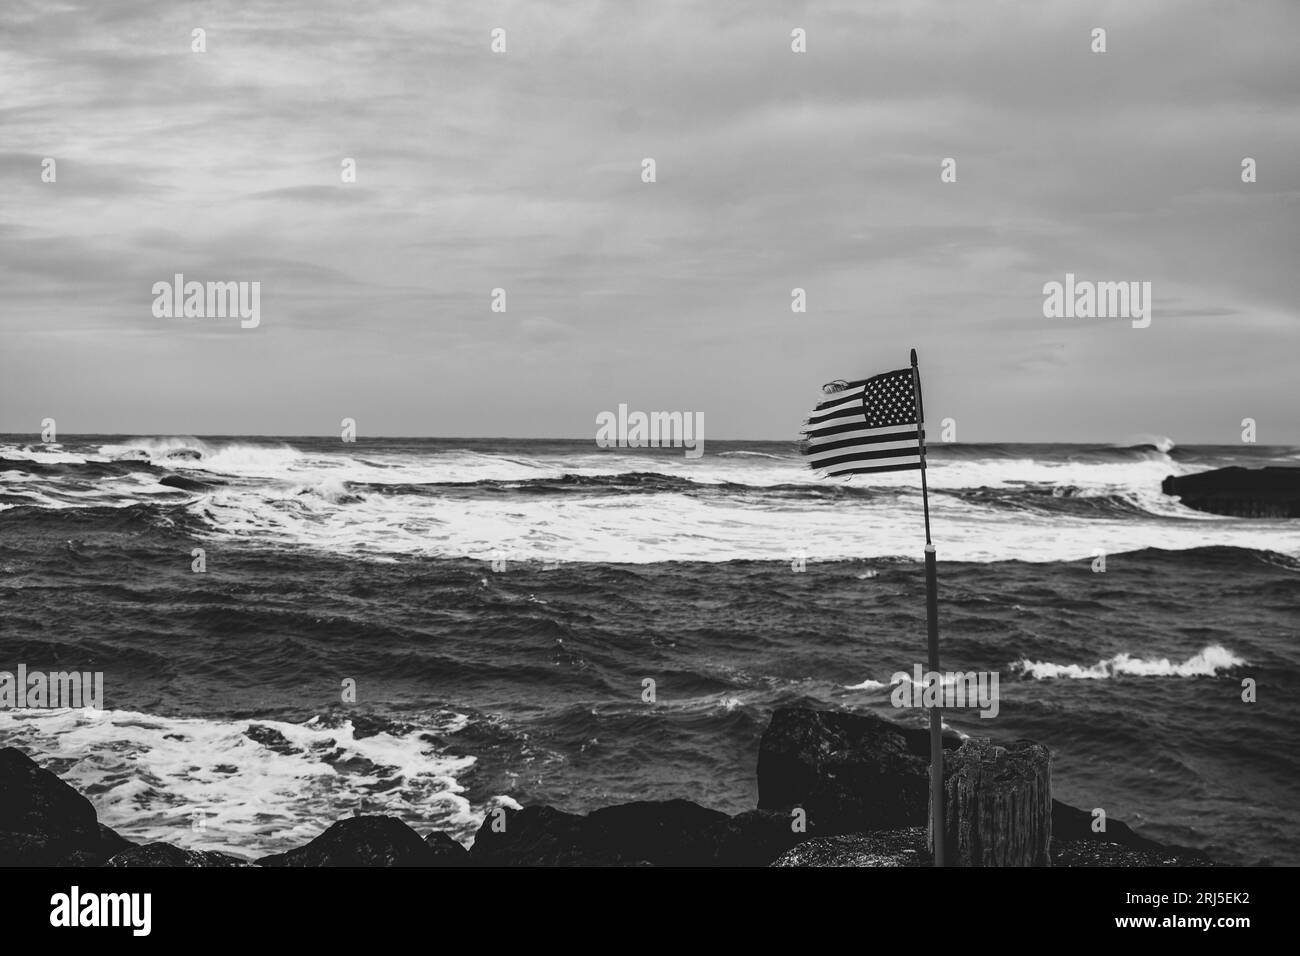 Une échelle de gris de drapeau américain agitant sur la plage contre les vagues de l'océan à Bandon, Oregon Banque D'Images